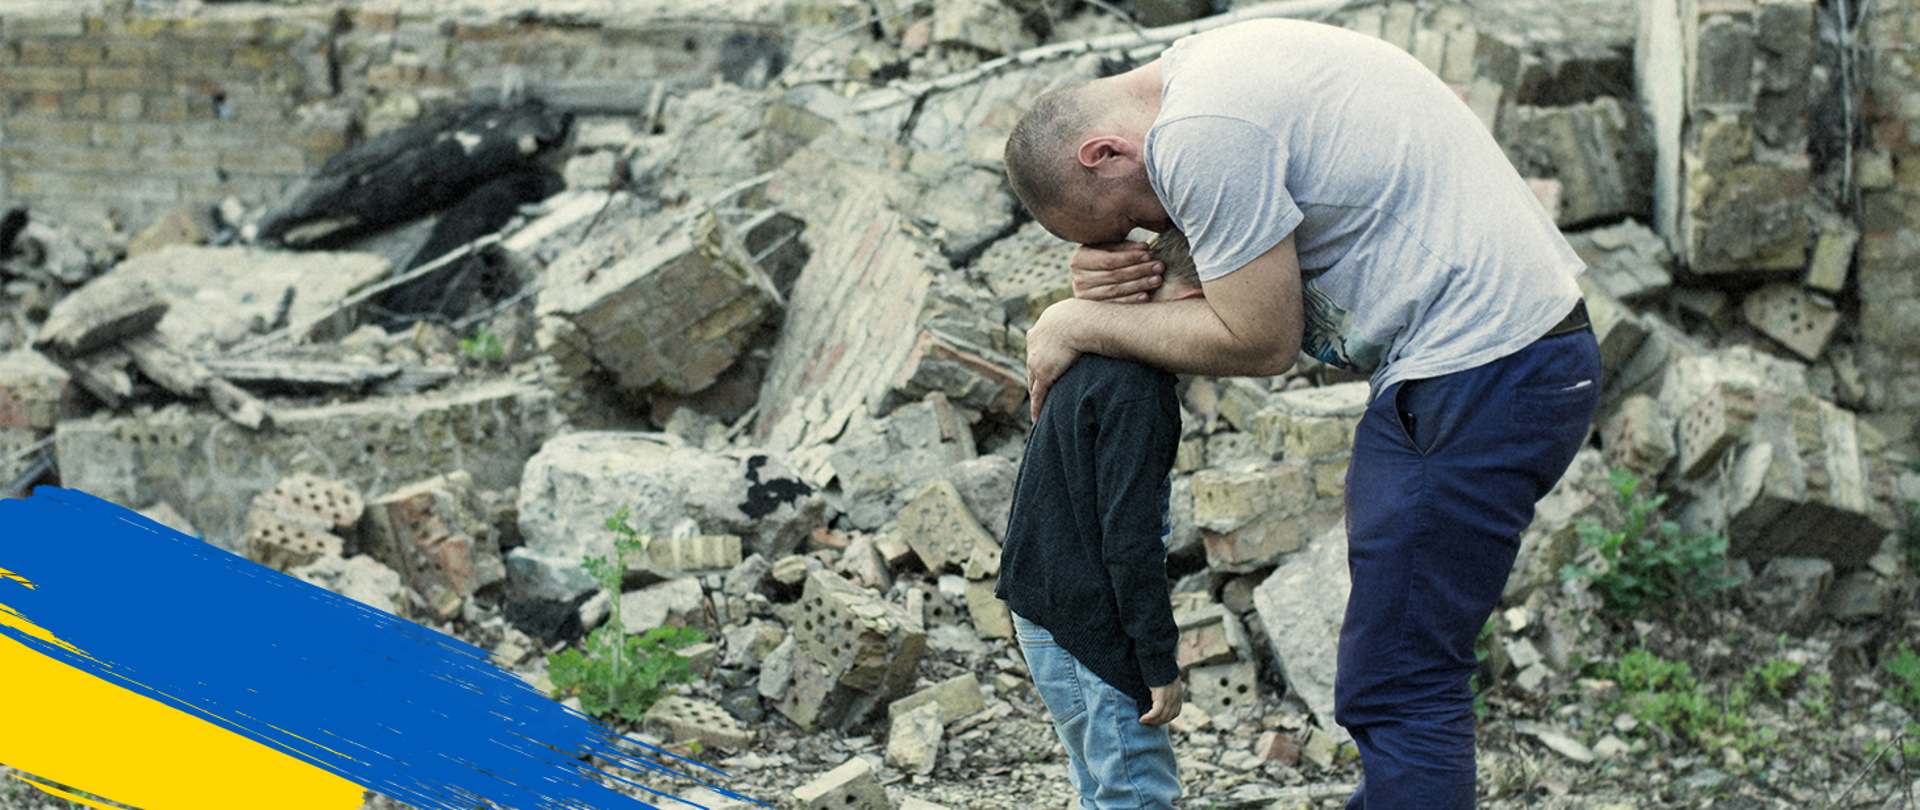 W lewym dolnym rogu flaga Ukrainy, w środku kawałki zburzonego budynku i mężczyzna, który przytula małego chłopca.